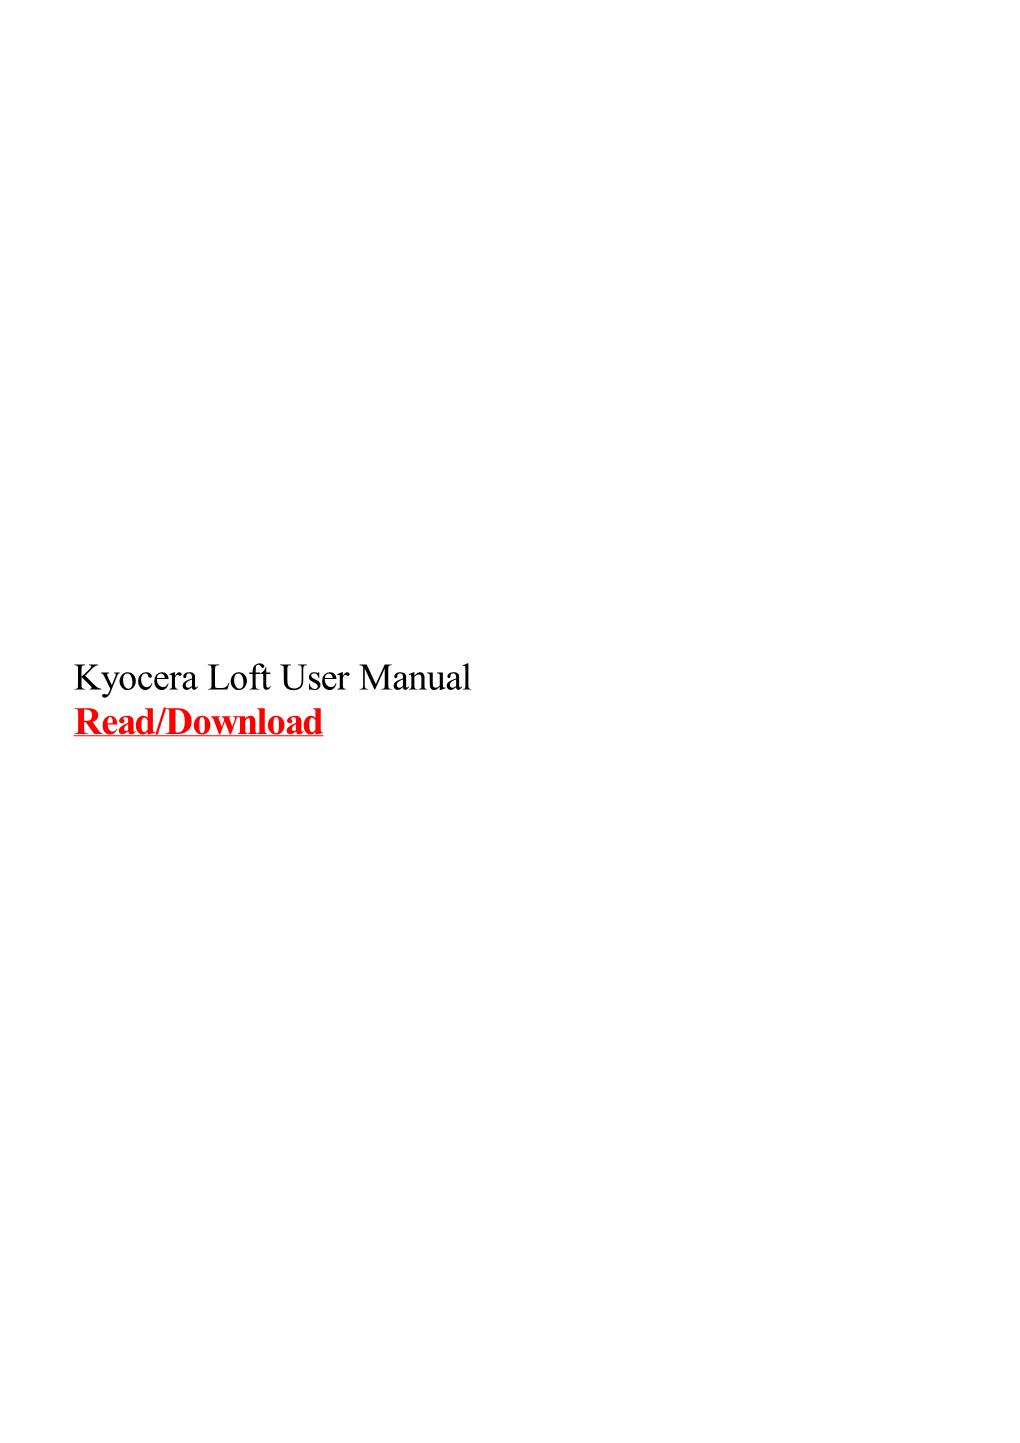 Kyocera Loft User Manual